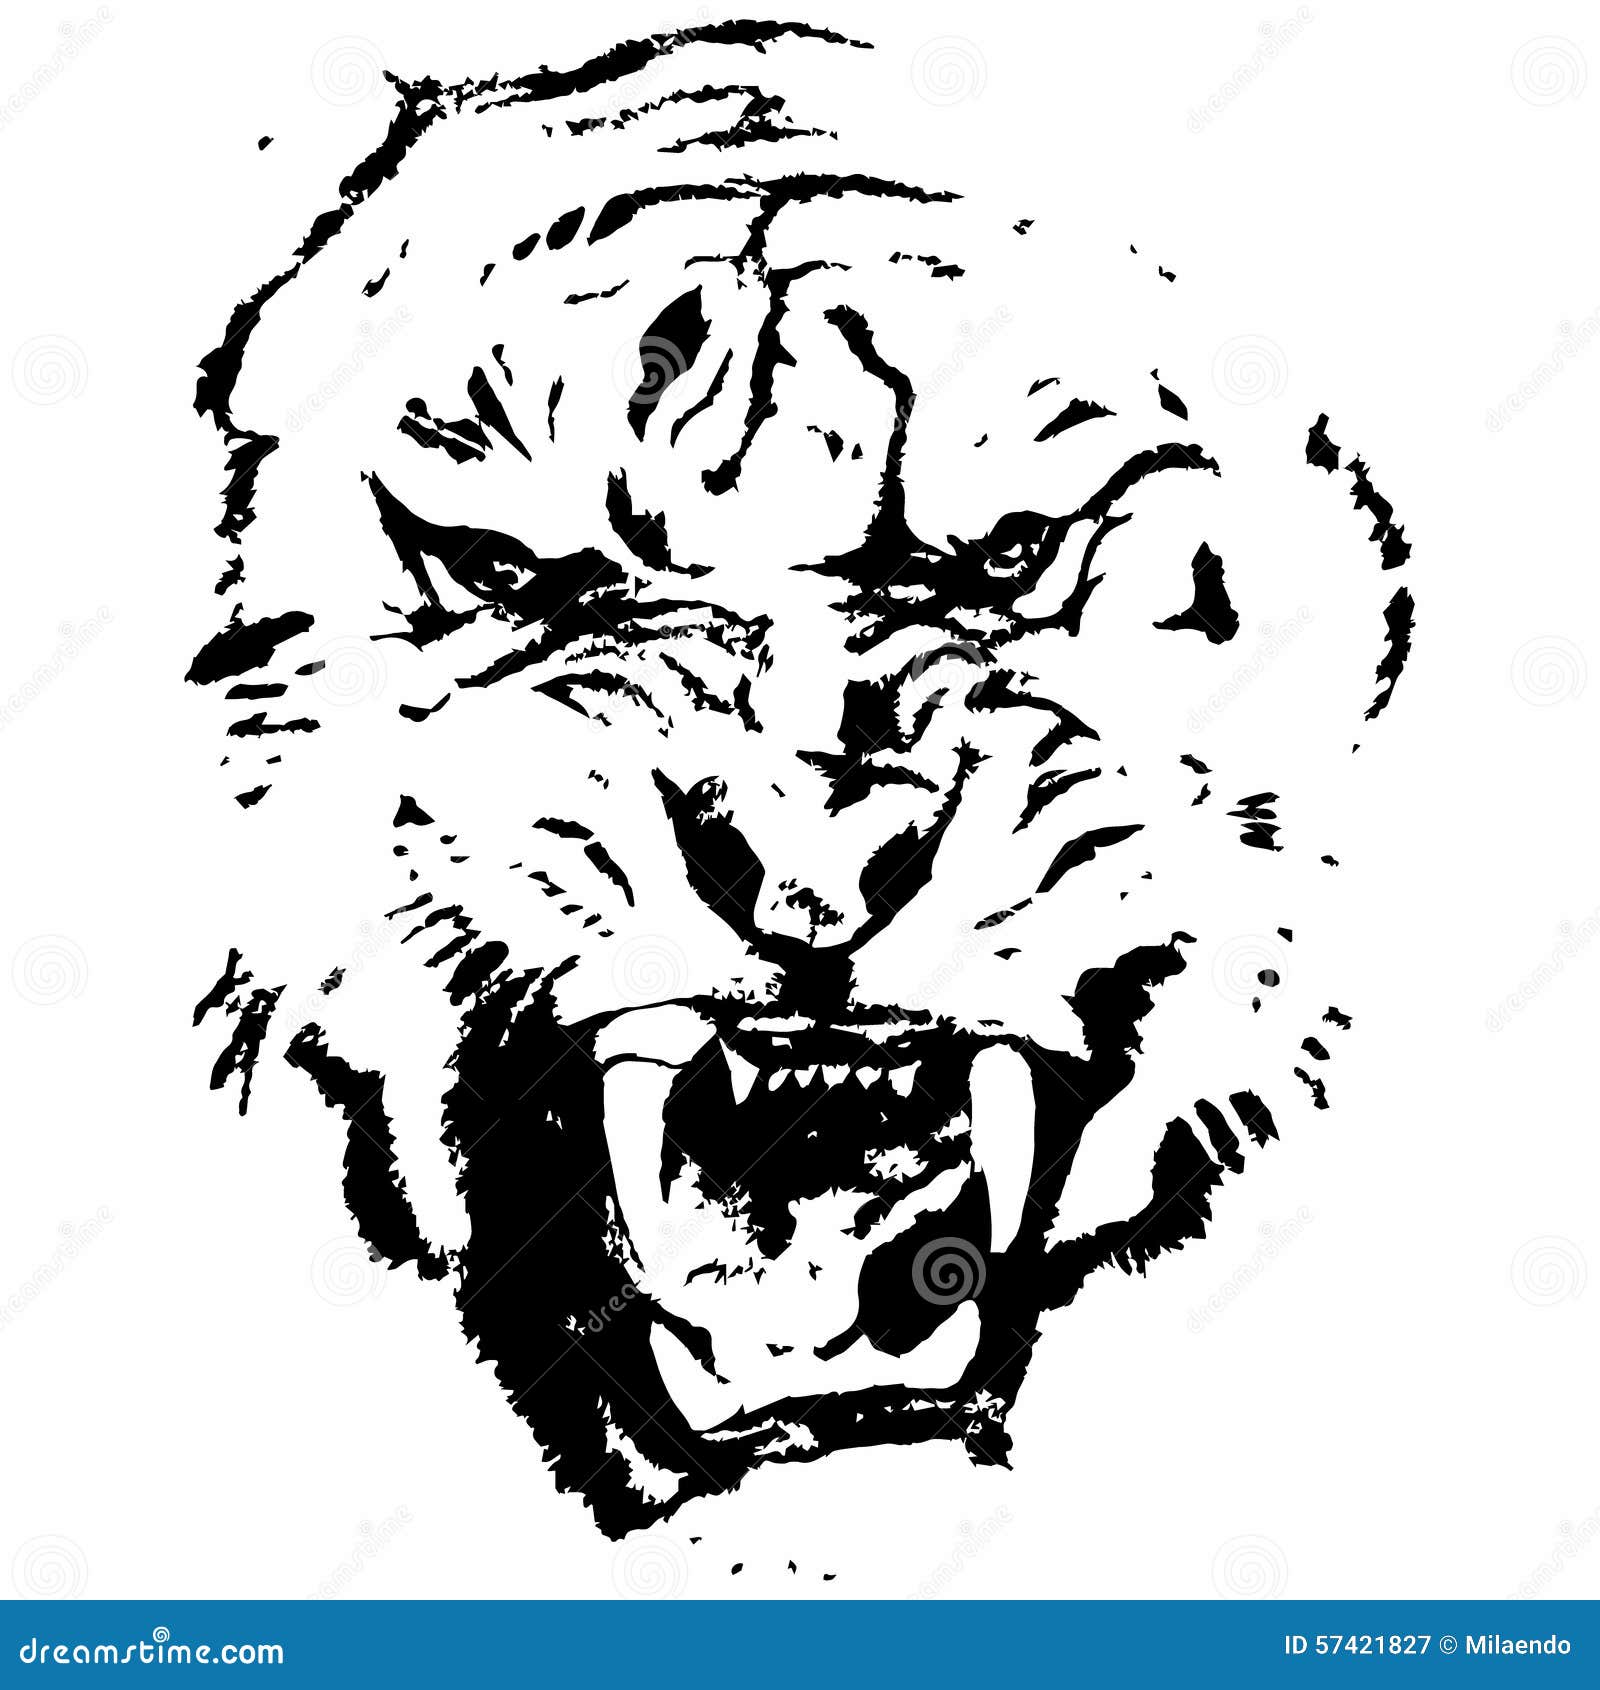 Tiger (huvud). Grafiskt skissa av en aggressiv tiger på en vit bakgrundsvektor